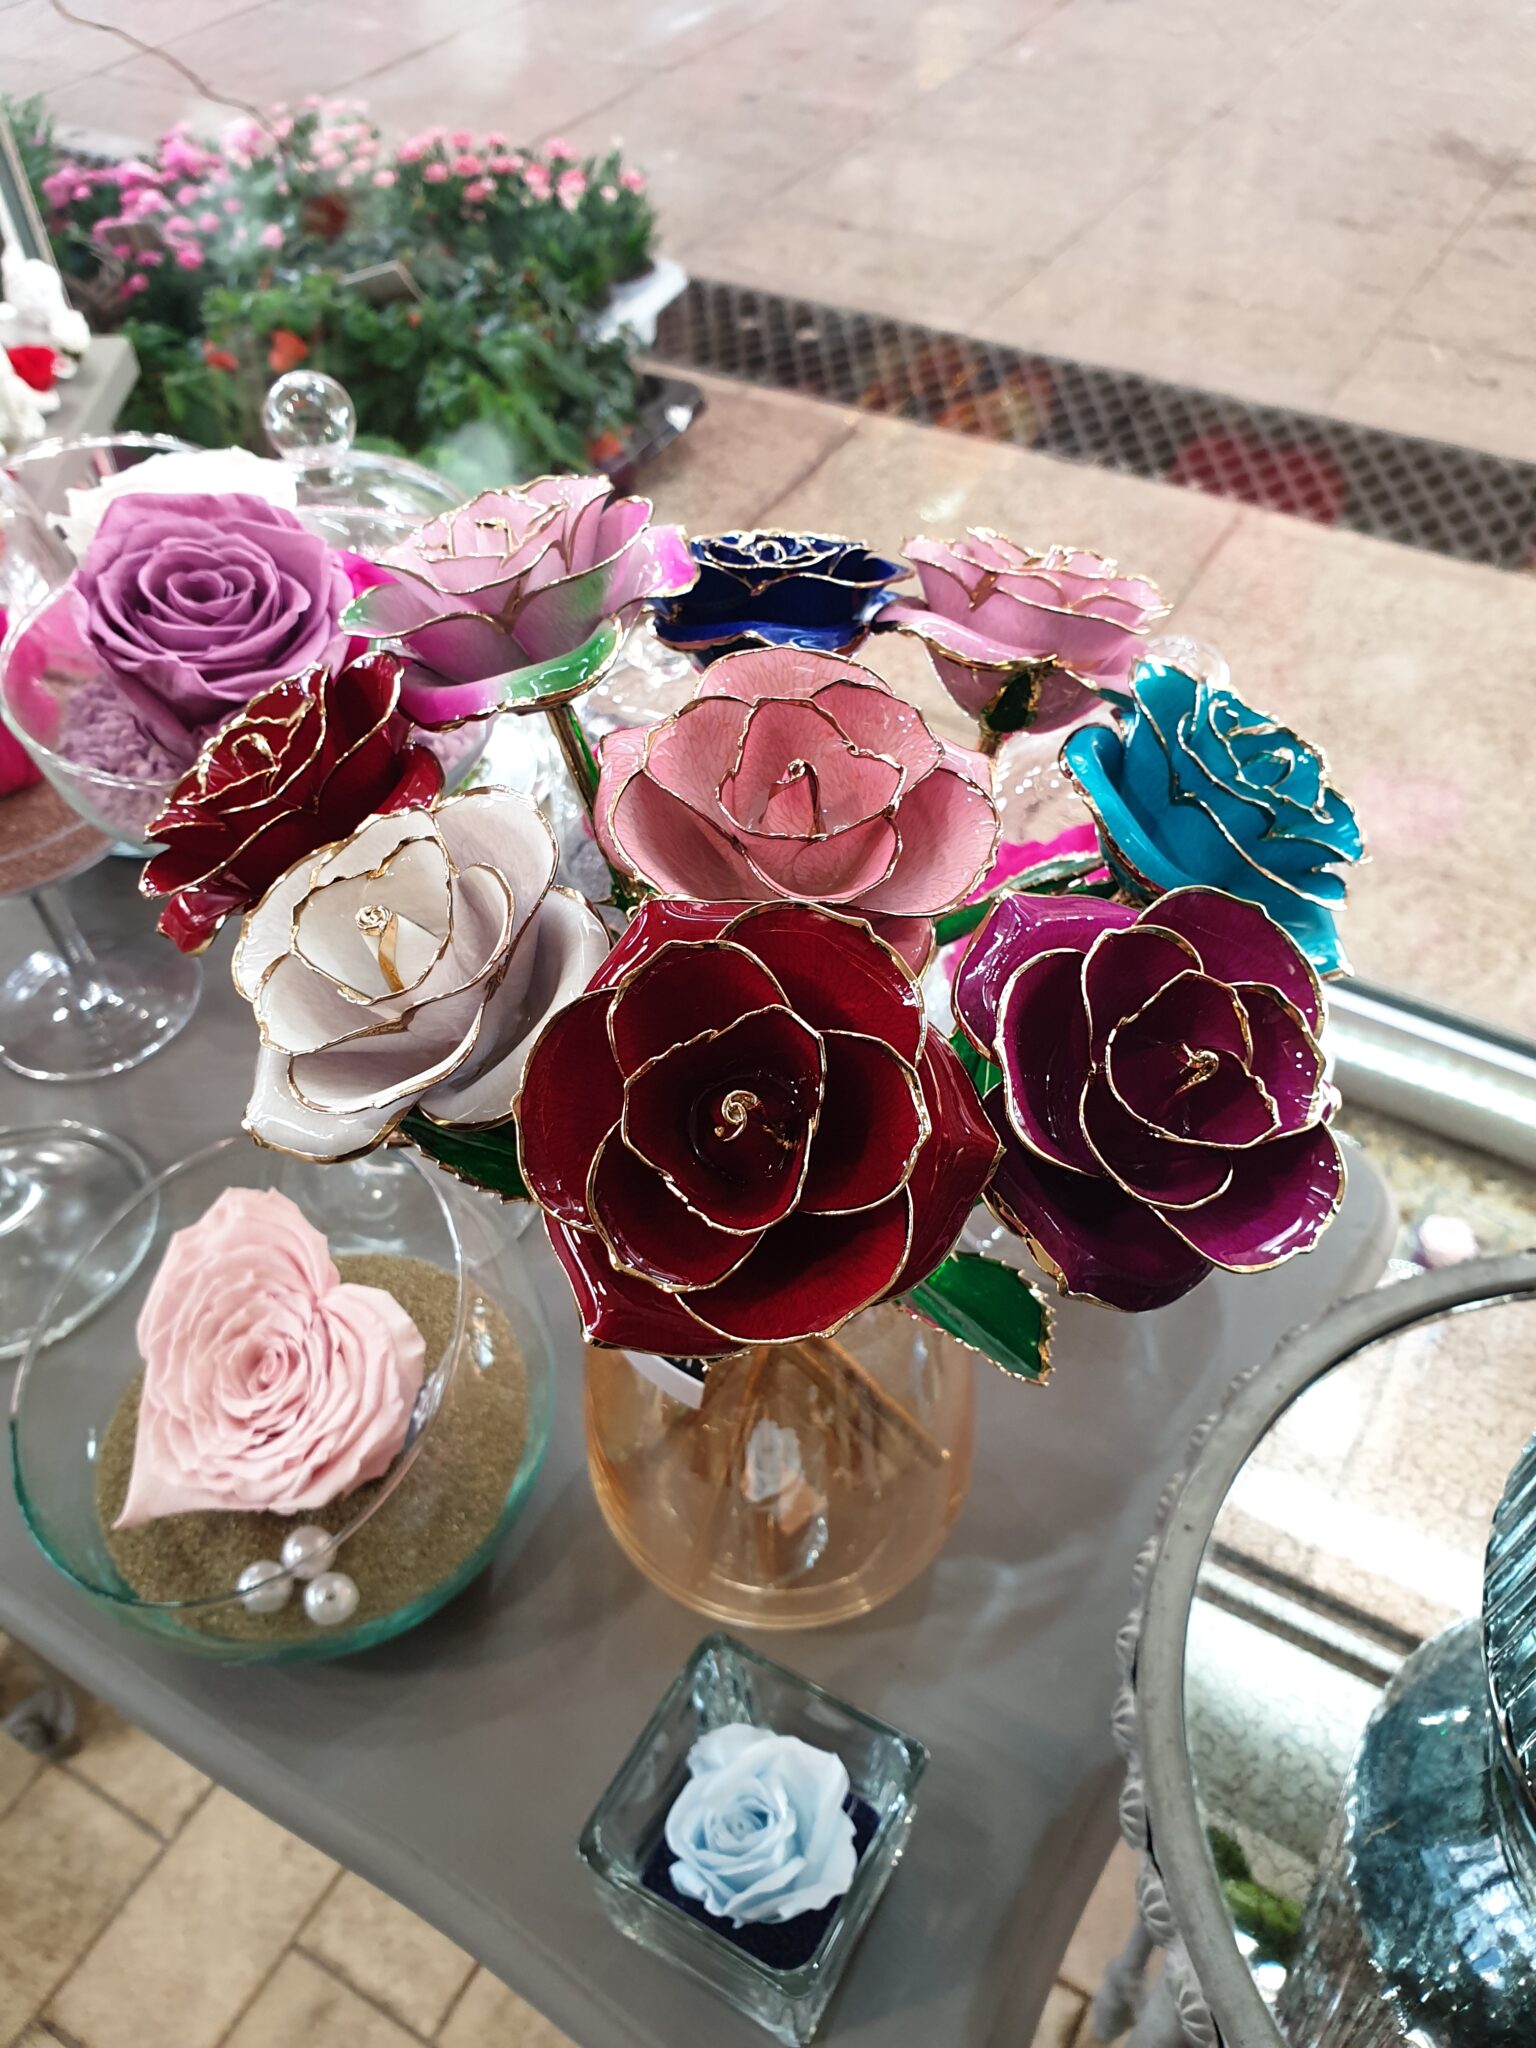 A découvrir dès aujourd'hui nos nouvelles créations de roses éternelles et nos oursons en roses tout mignons 💜... [https://www.mariedanede.fr/blog/actualites/nos-nouvelles-roses-eternelles/]